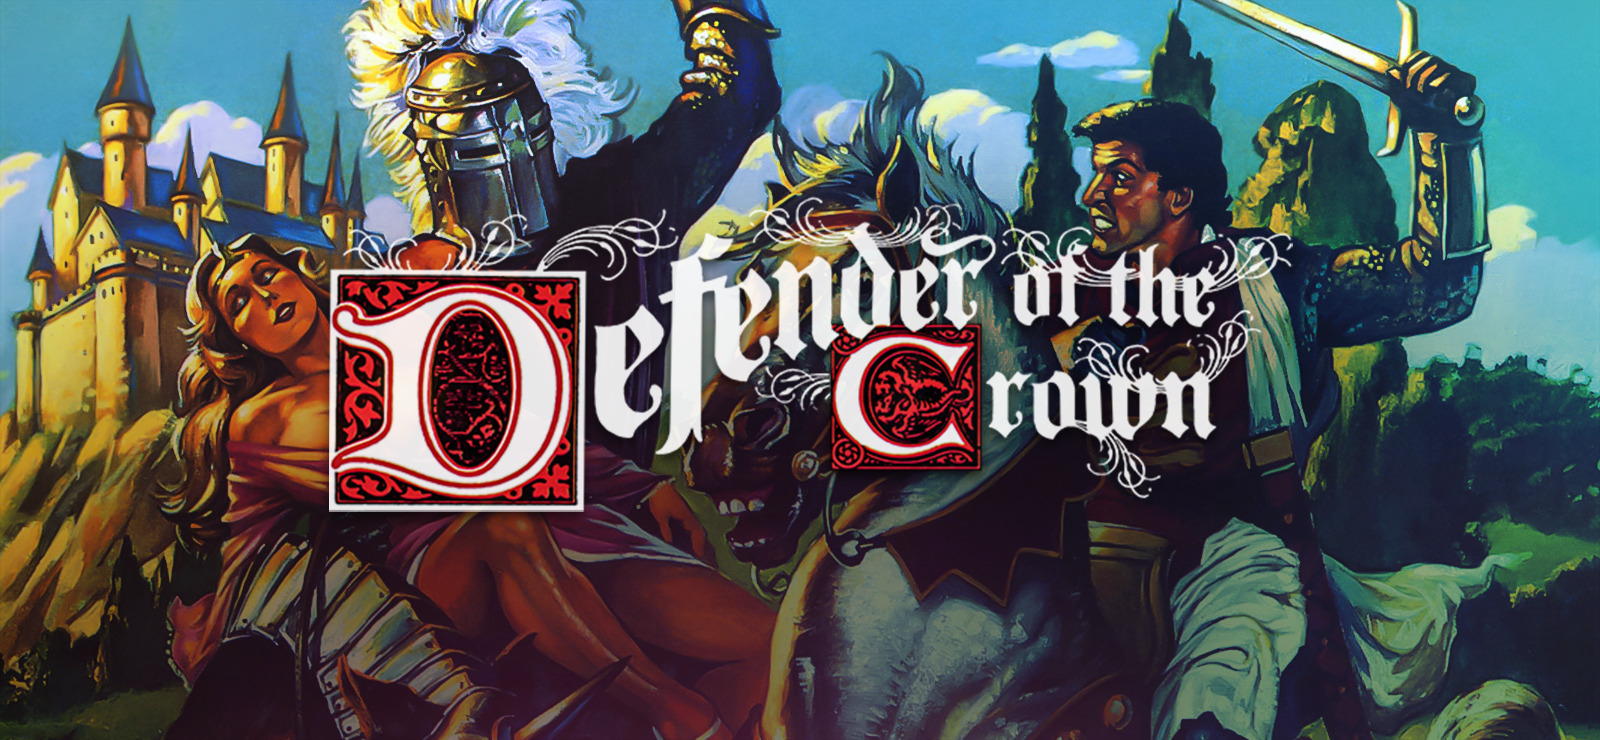 defender-of-the-crown-free-download-v1-0-gog-unlocked